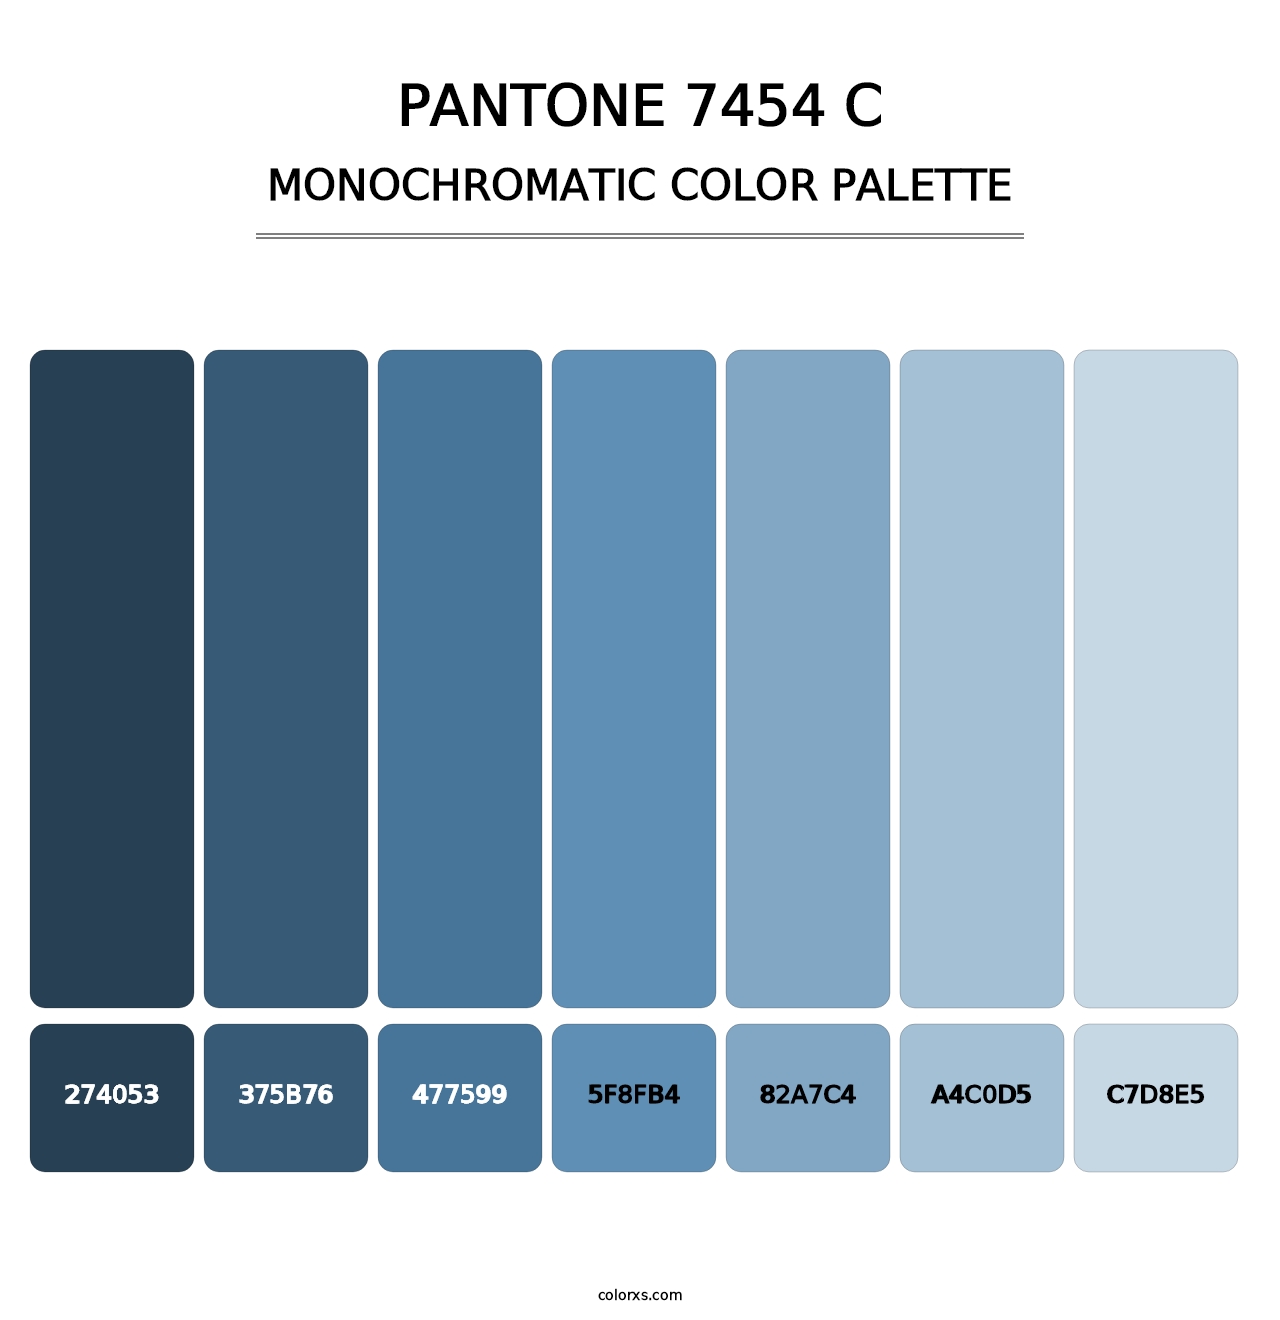 PANTONE 7454 C - Monochromatic Color Palette